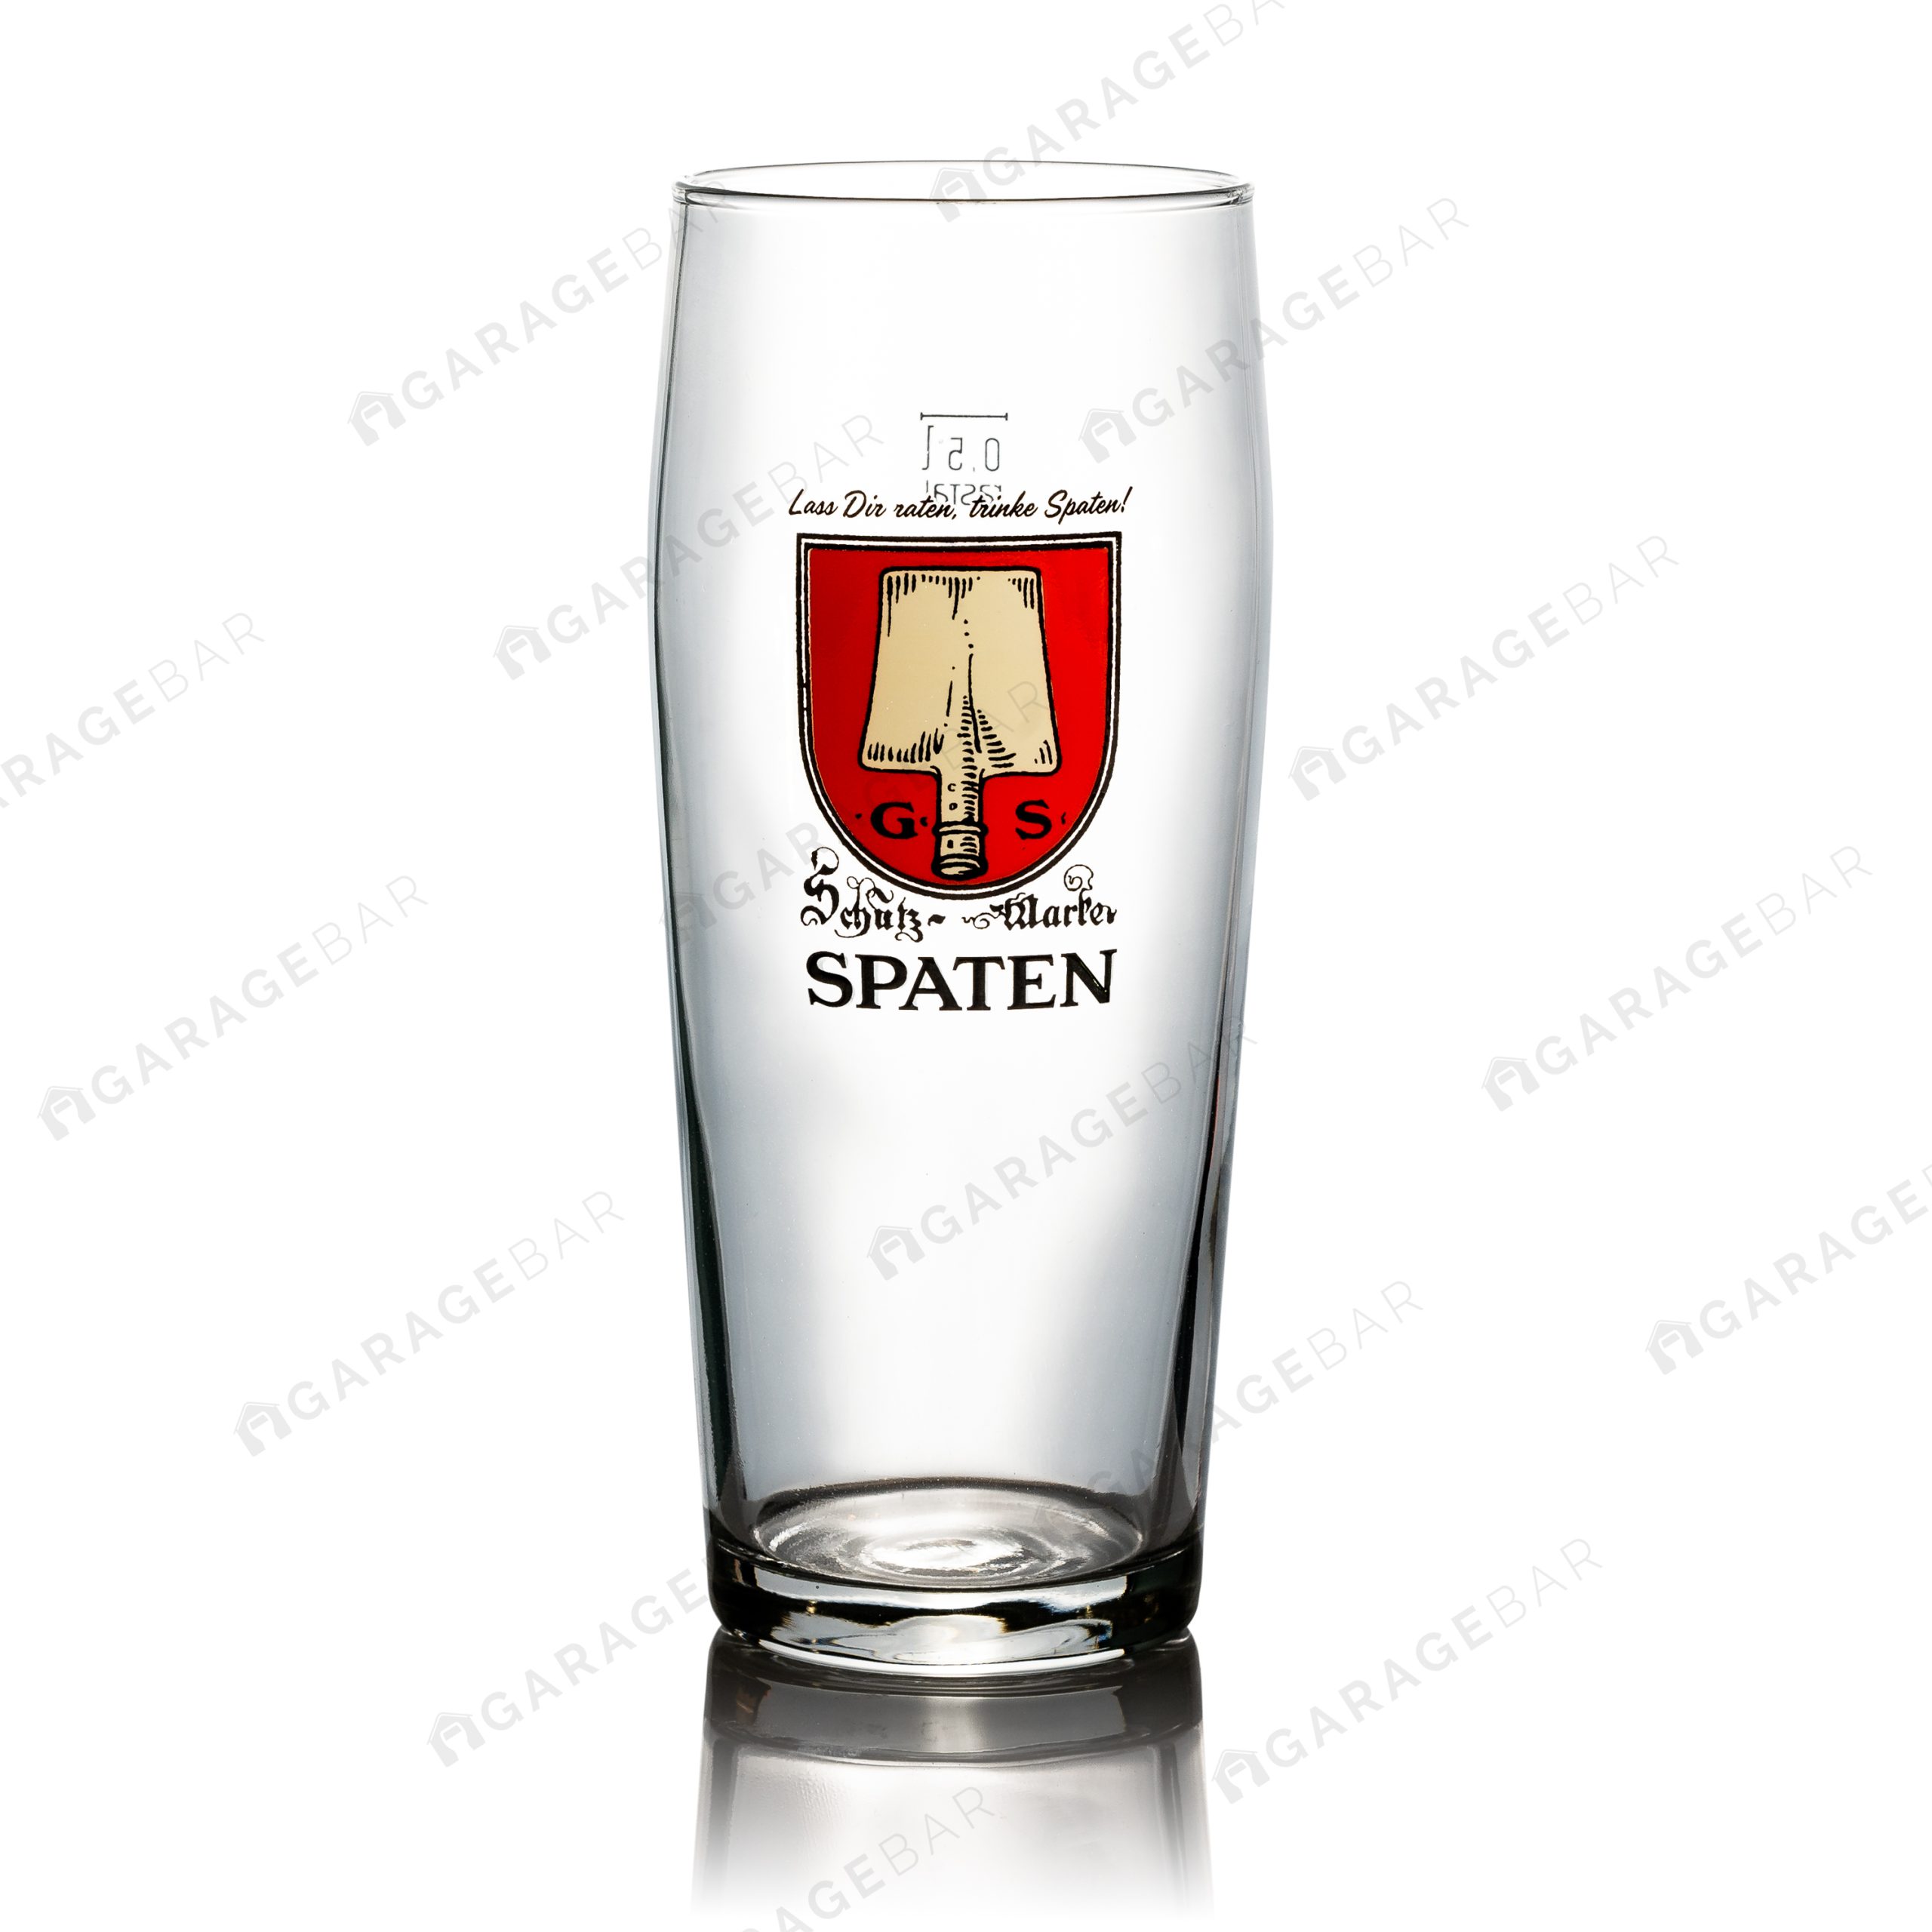 Spaten Pint Beer Glass